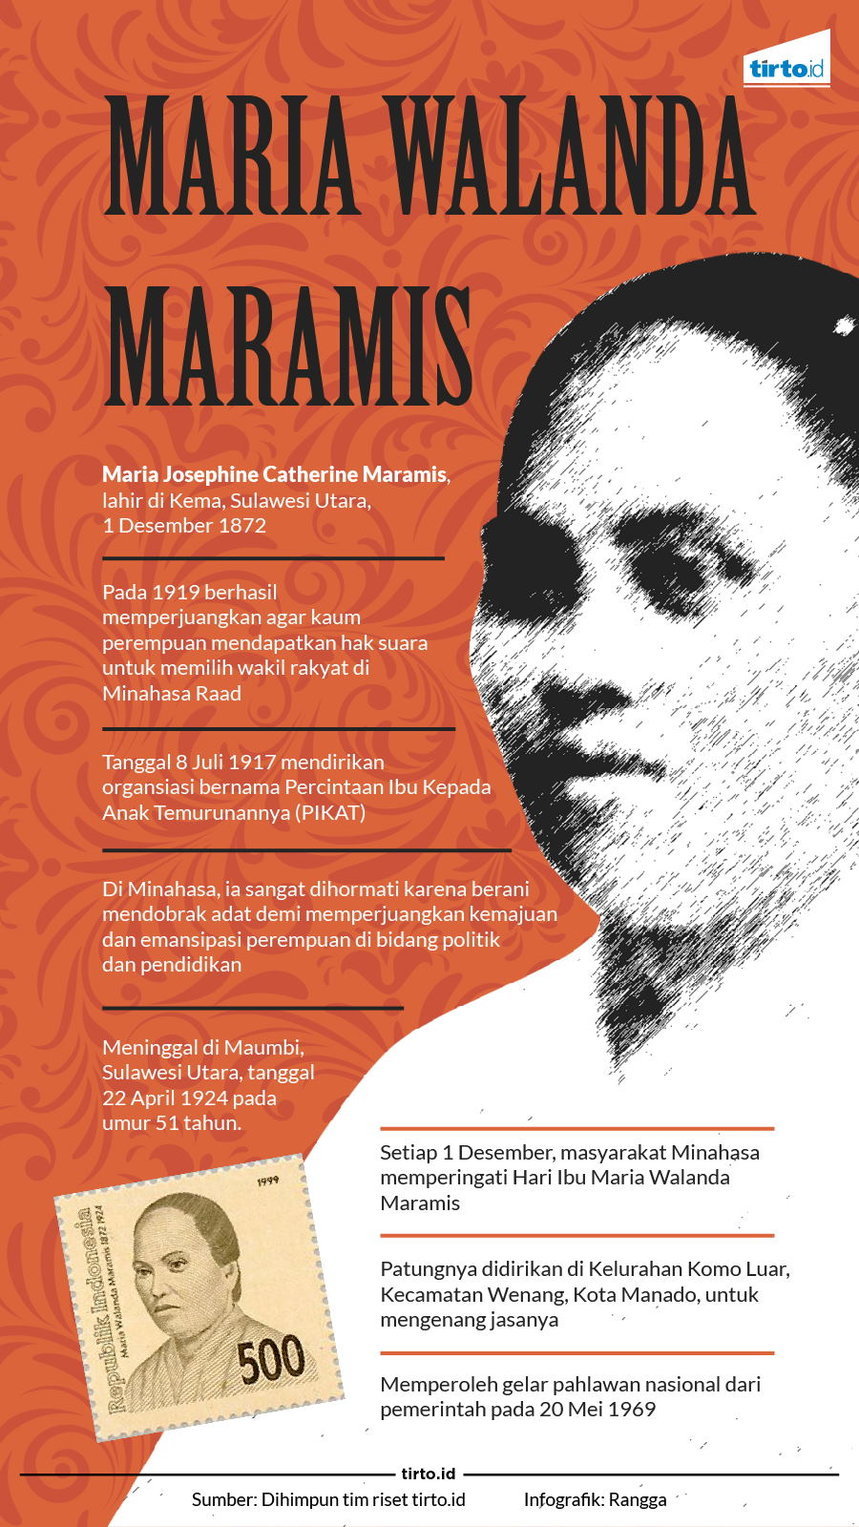 Infografik Maria Walanda Maramis